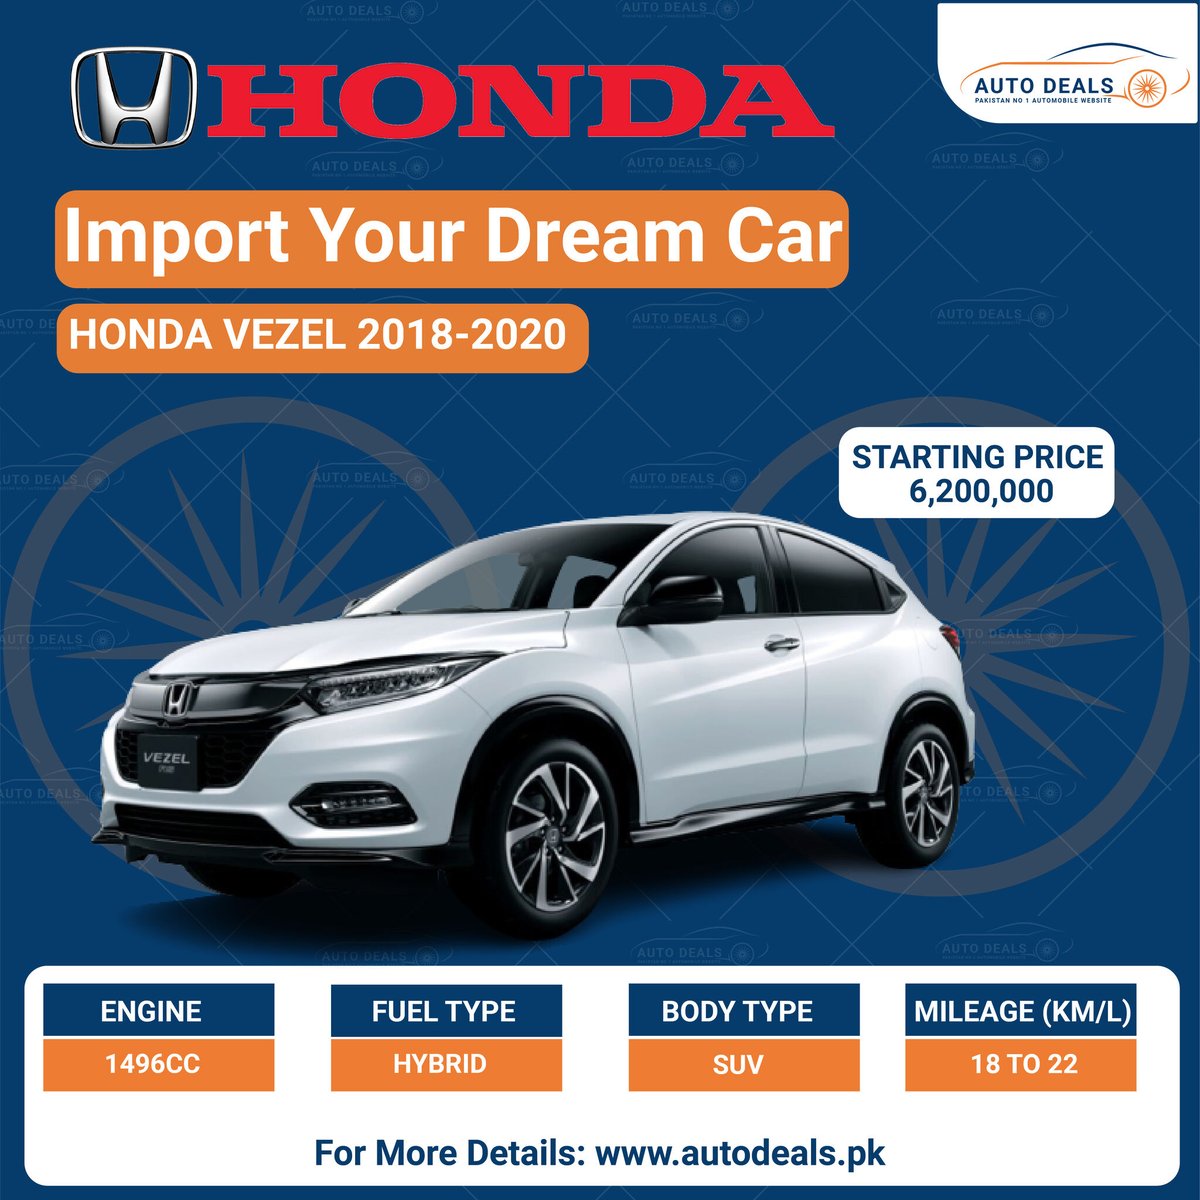 HONDA VEZEL 2018-1020 
Price & Specifications
Visit Our Website: autodeals.pk 
#Hondacar #carlover #carupdate #safedrive #autodeals